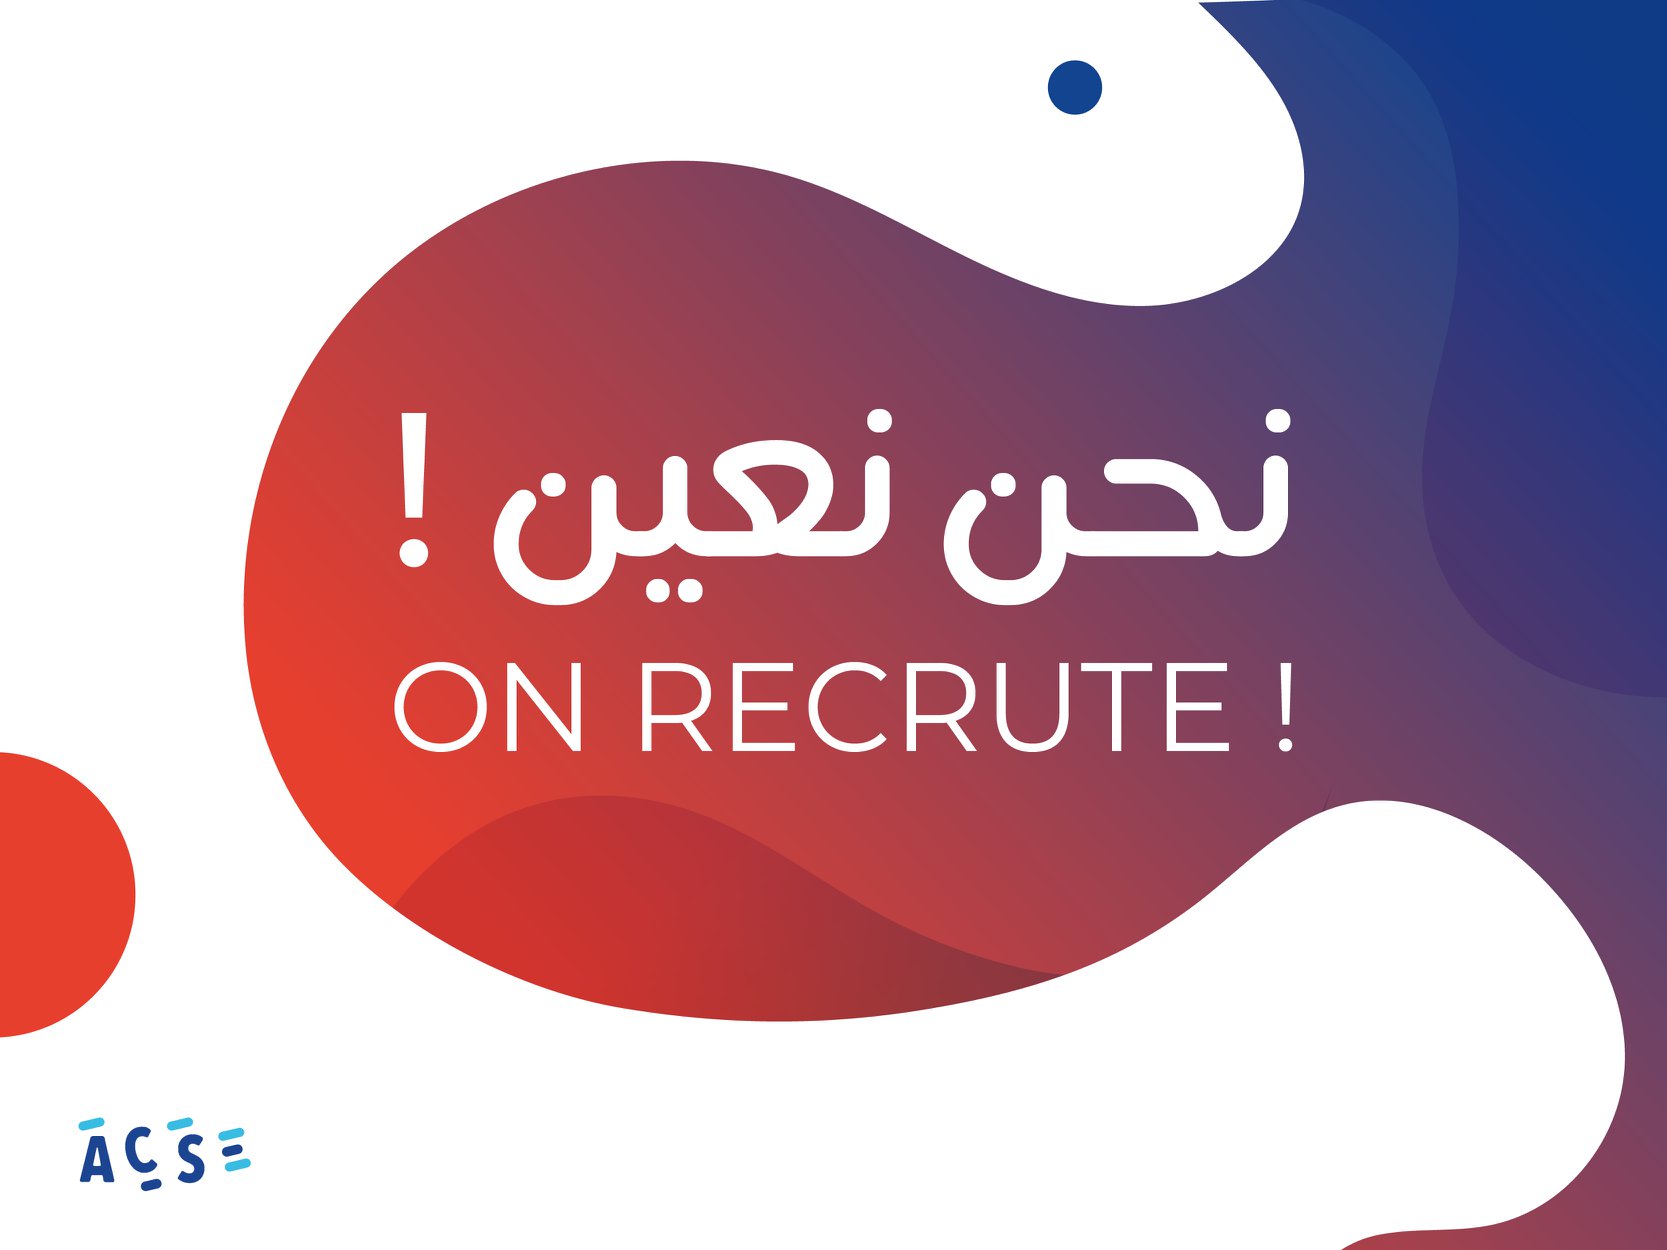 Le centre Algérien d’entrepreneuriat social cherche un(e) chargé(e) de programme incubation